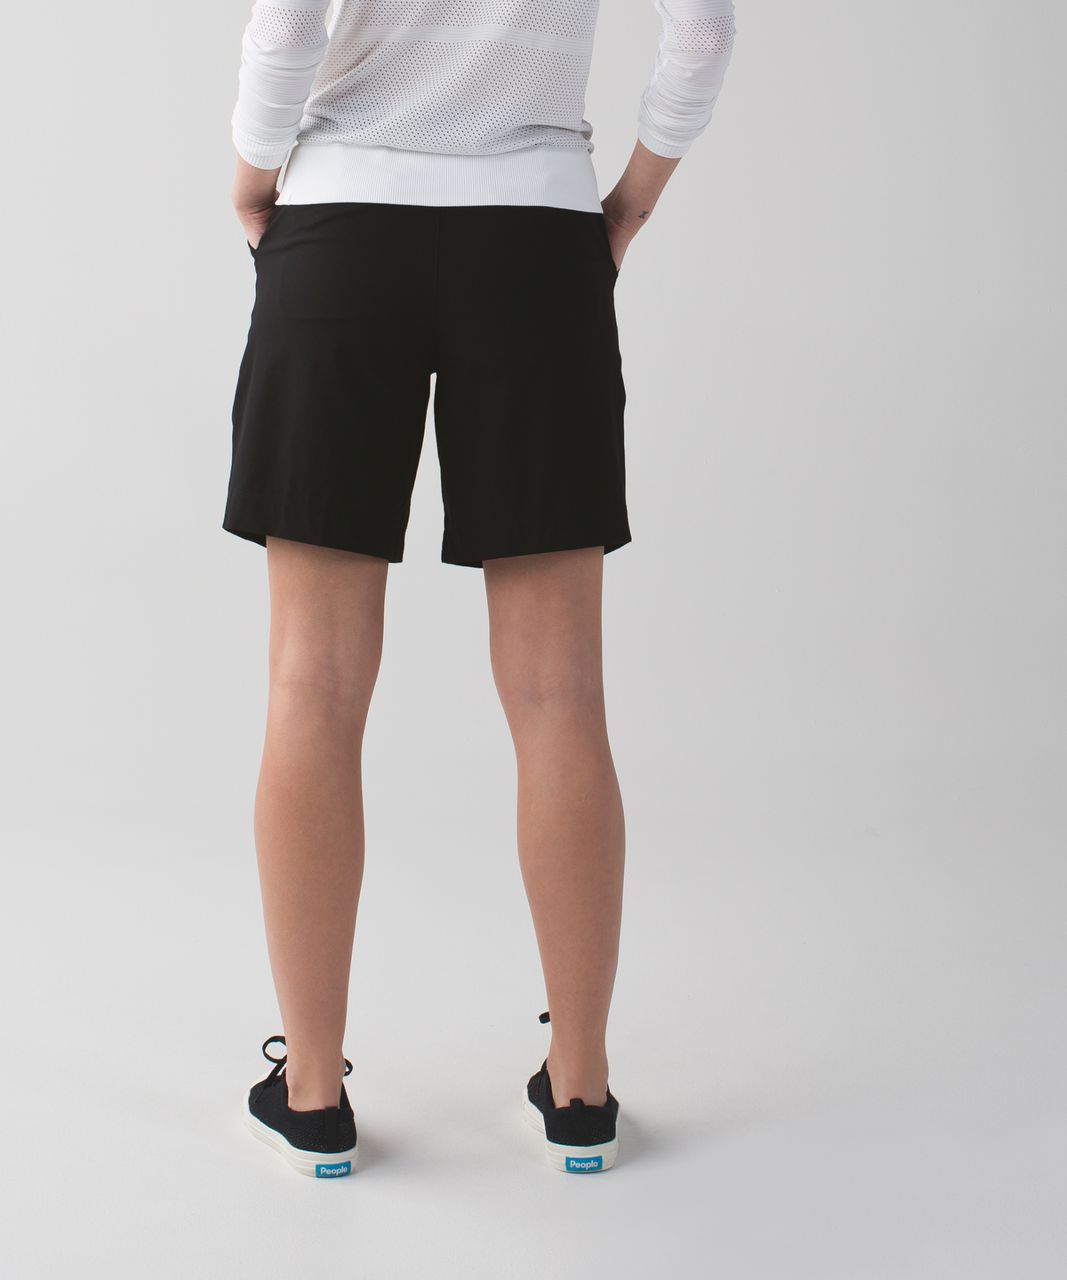 long lululemon shorts